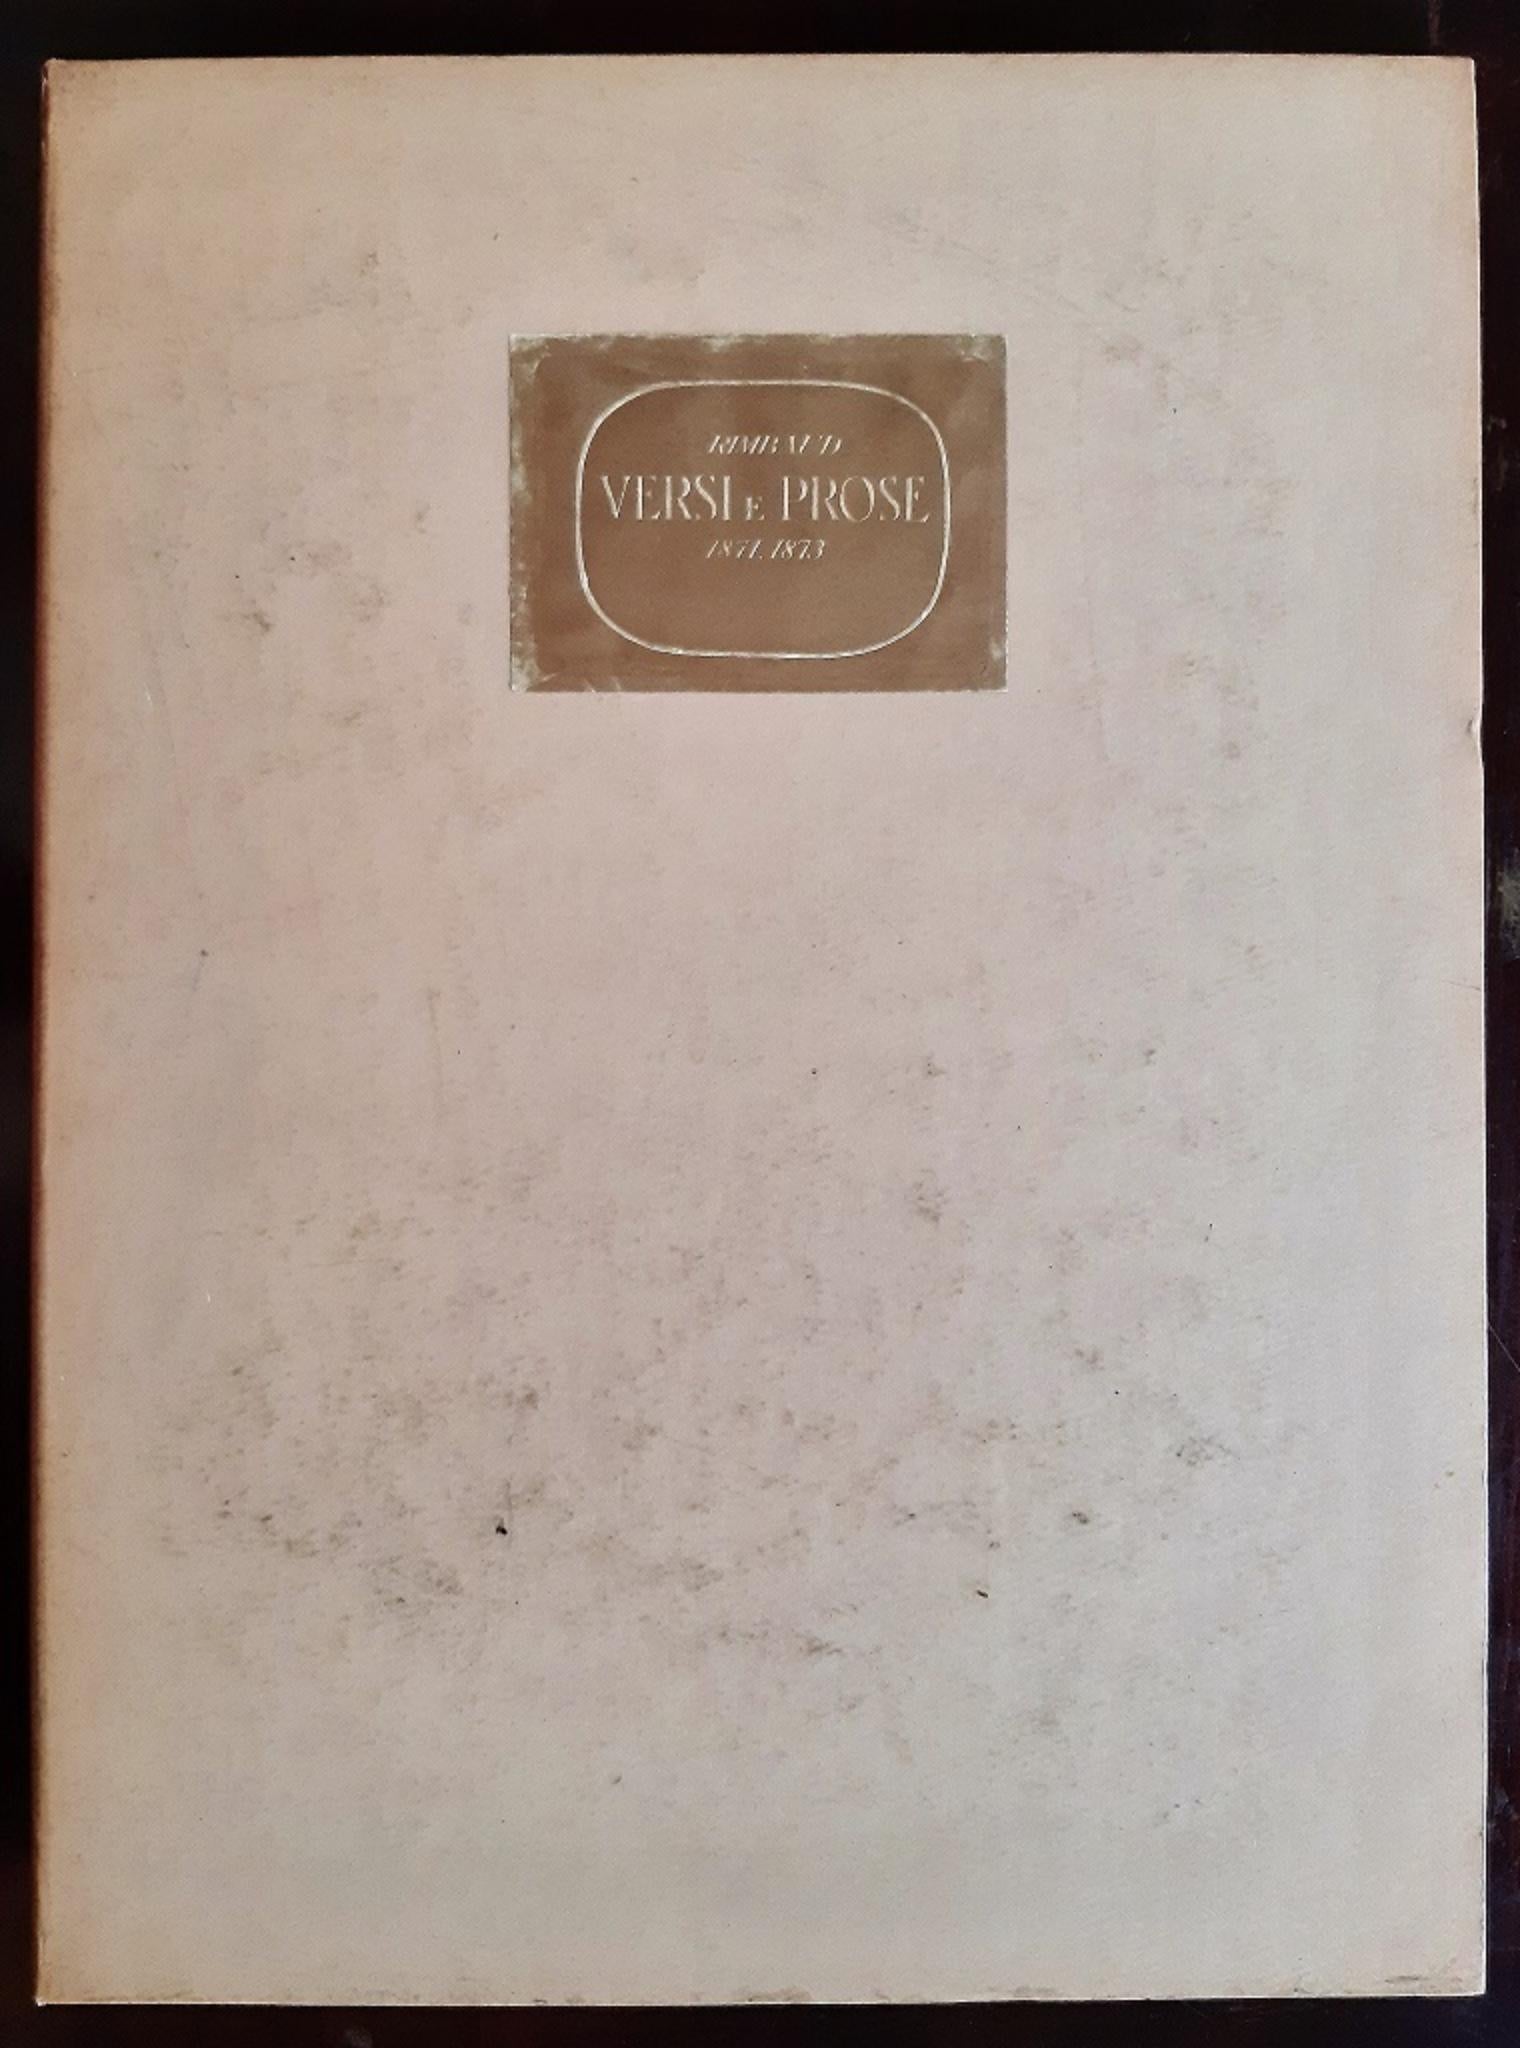 Versi e Prose 1871-1873 - Rare Book Illustrated by Carlo Carrà - 1945 For Sale 1